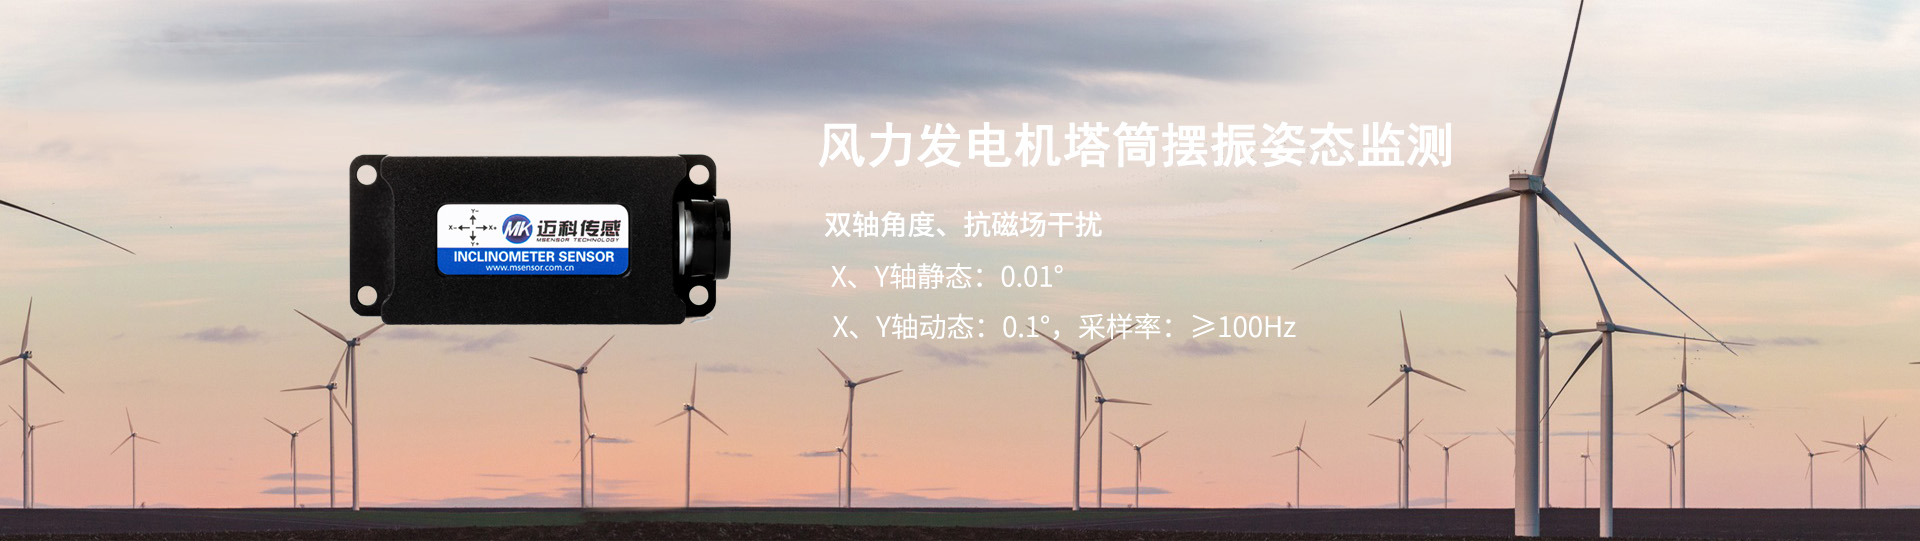 風力發電機塔筒擺振-無錫邁科傳感科技有限公司